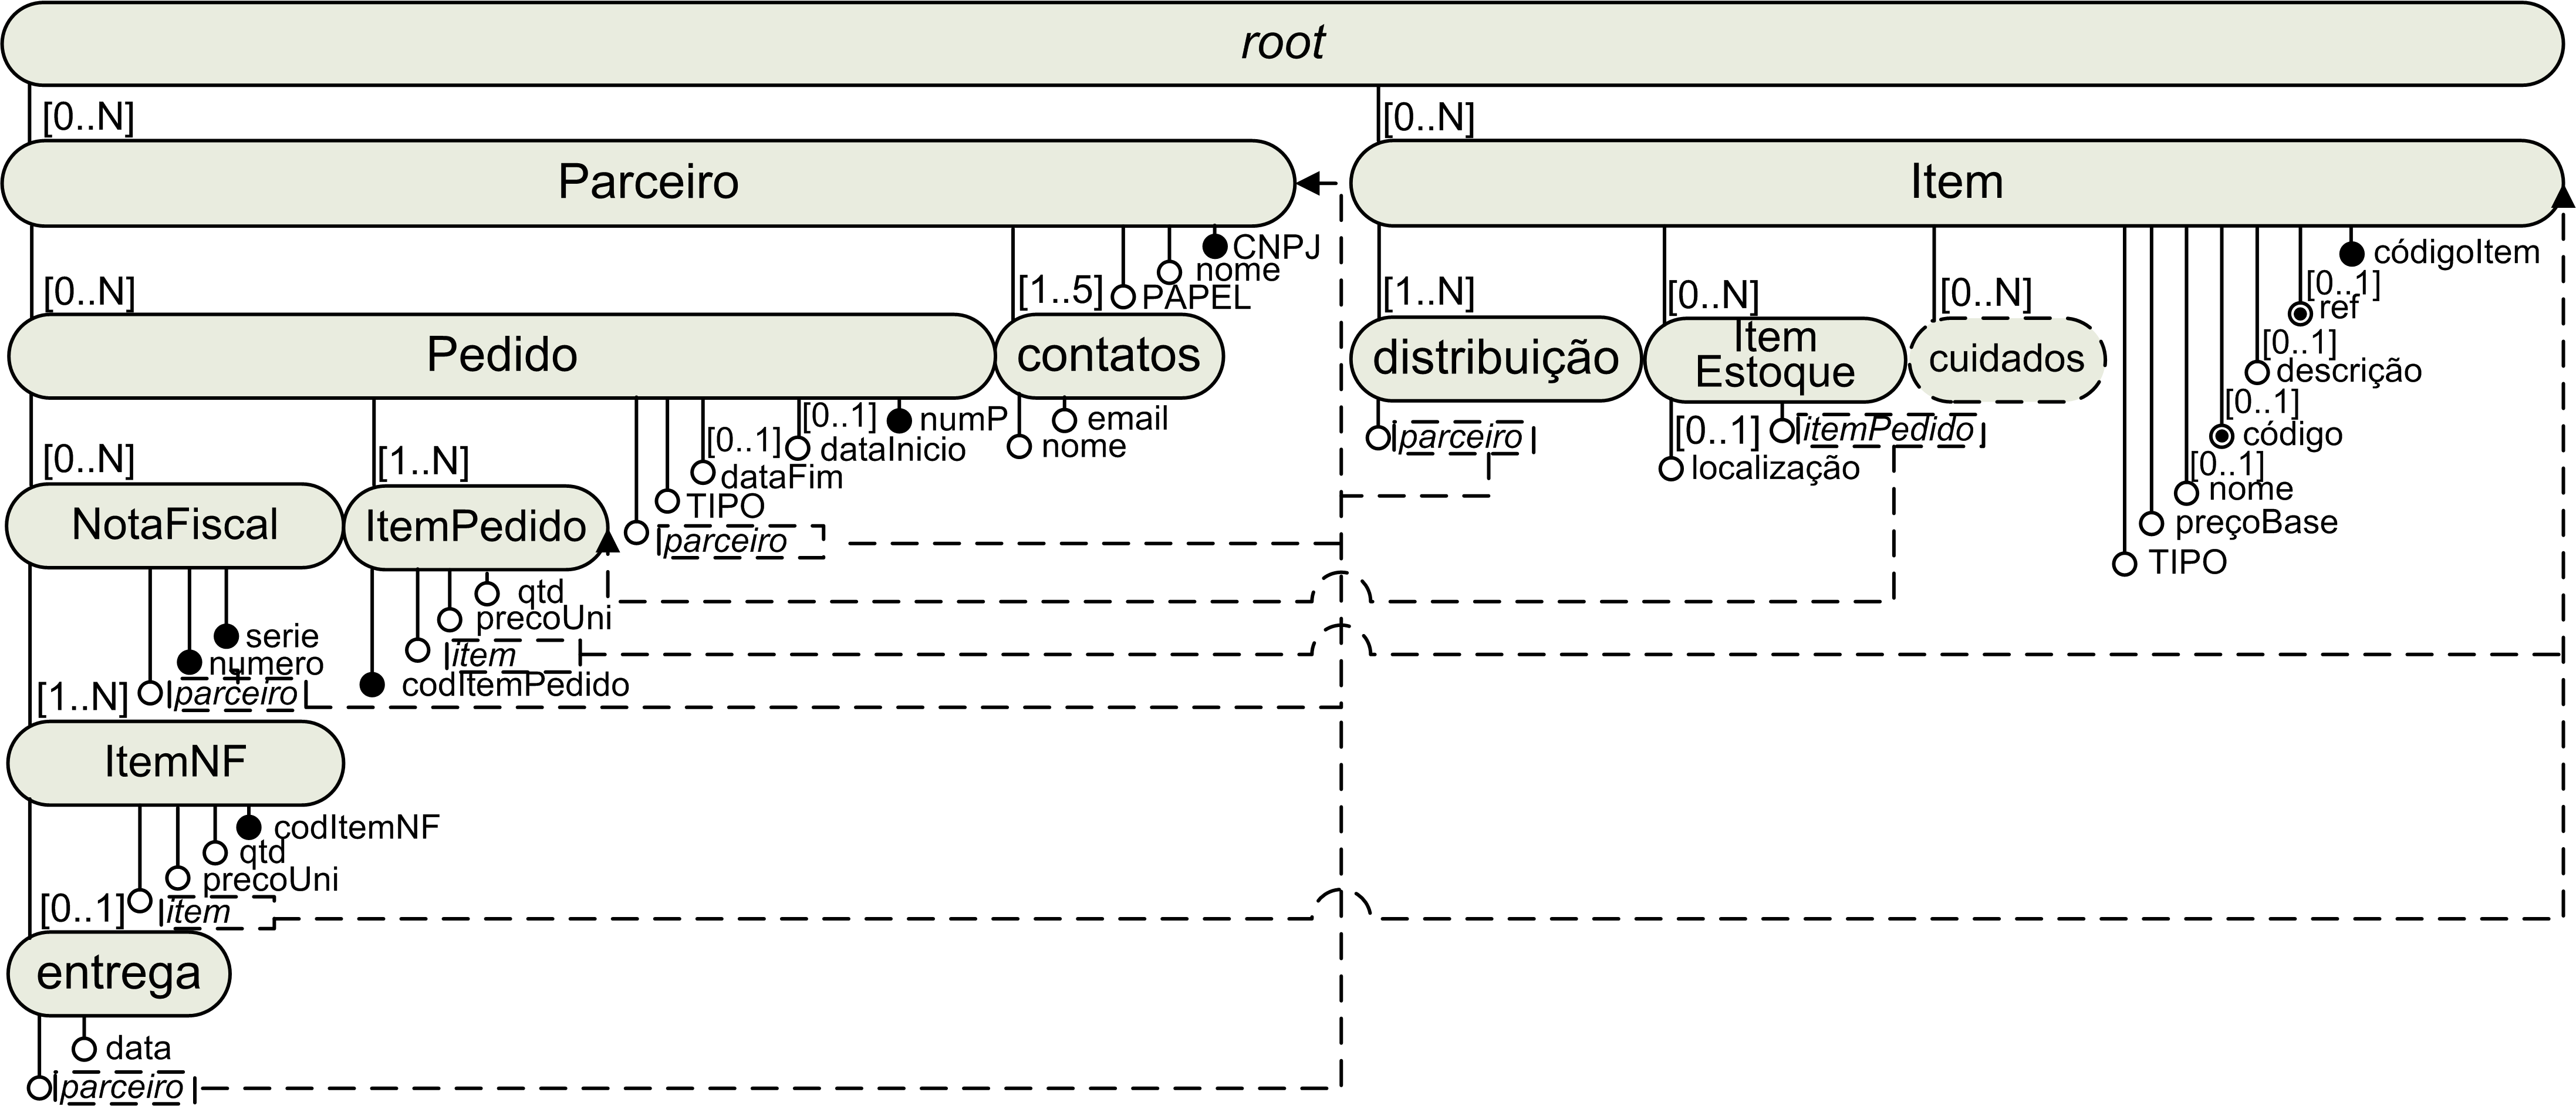 91 Figura 6.3: Esquema Lógico XML obtido pelo processo baseado em análise de carga processados como relacionamentos das entidades (superclasses) que estão diretamente representadas no esquema lógico.